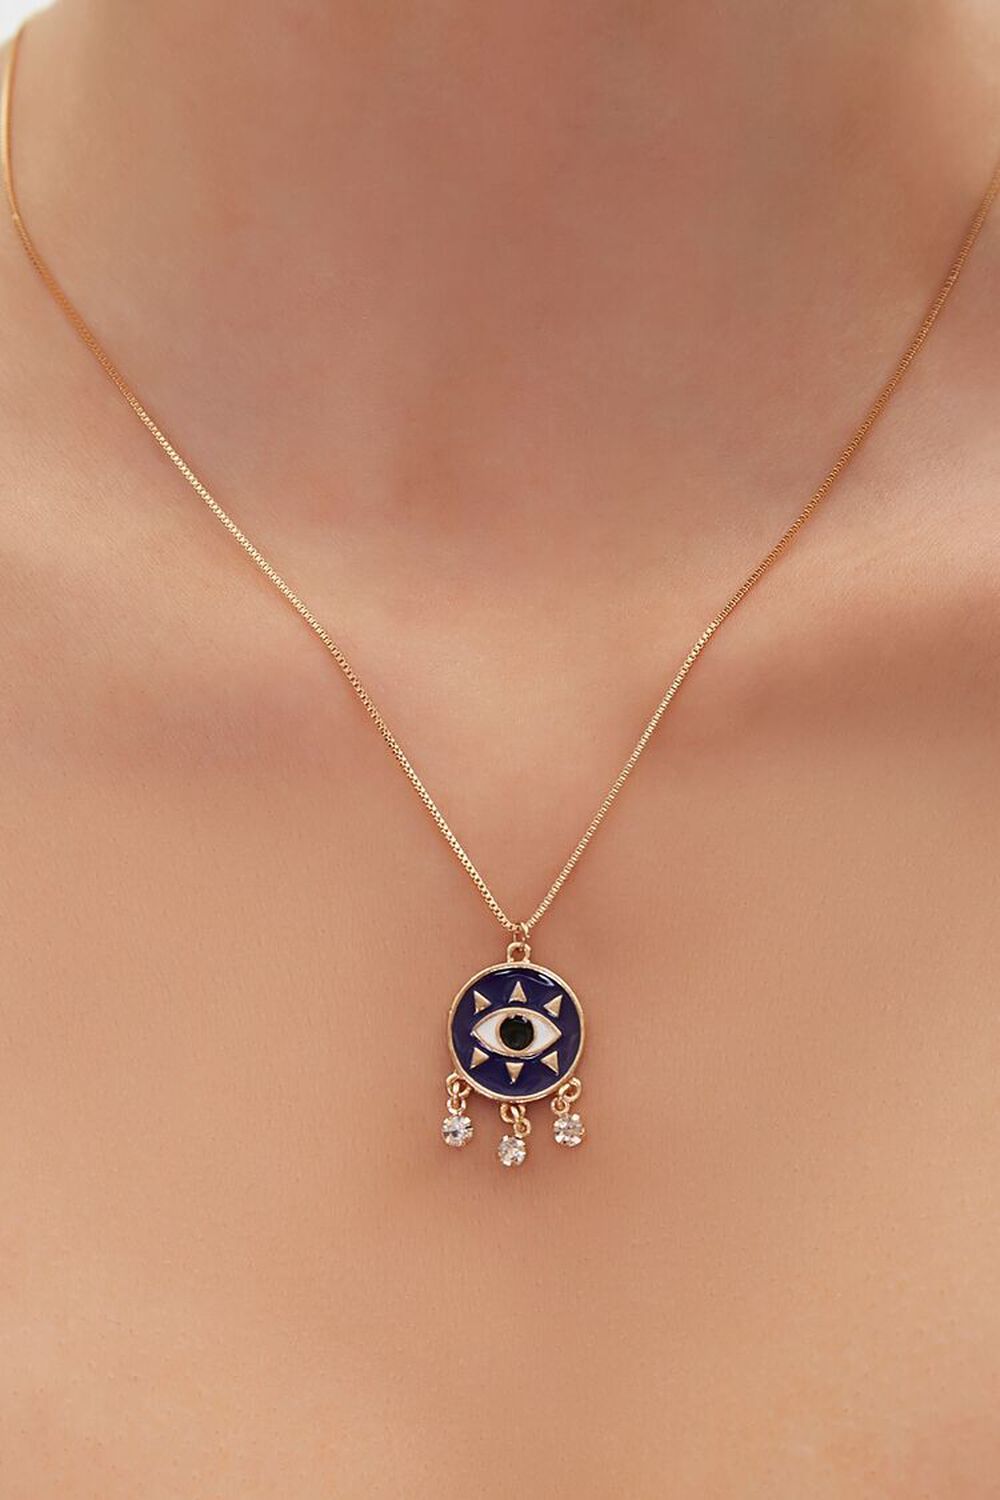 GOLD/BLUE Eye Pendant Necklace, image 1